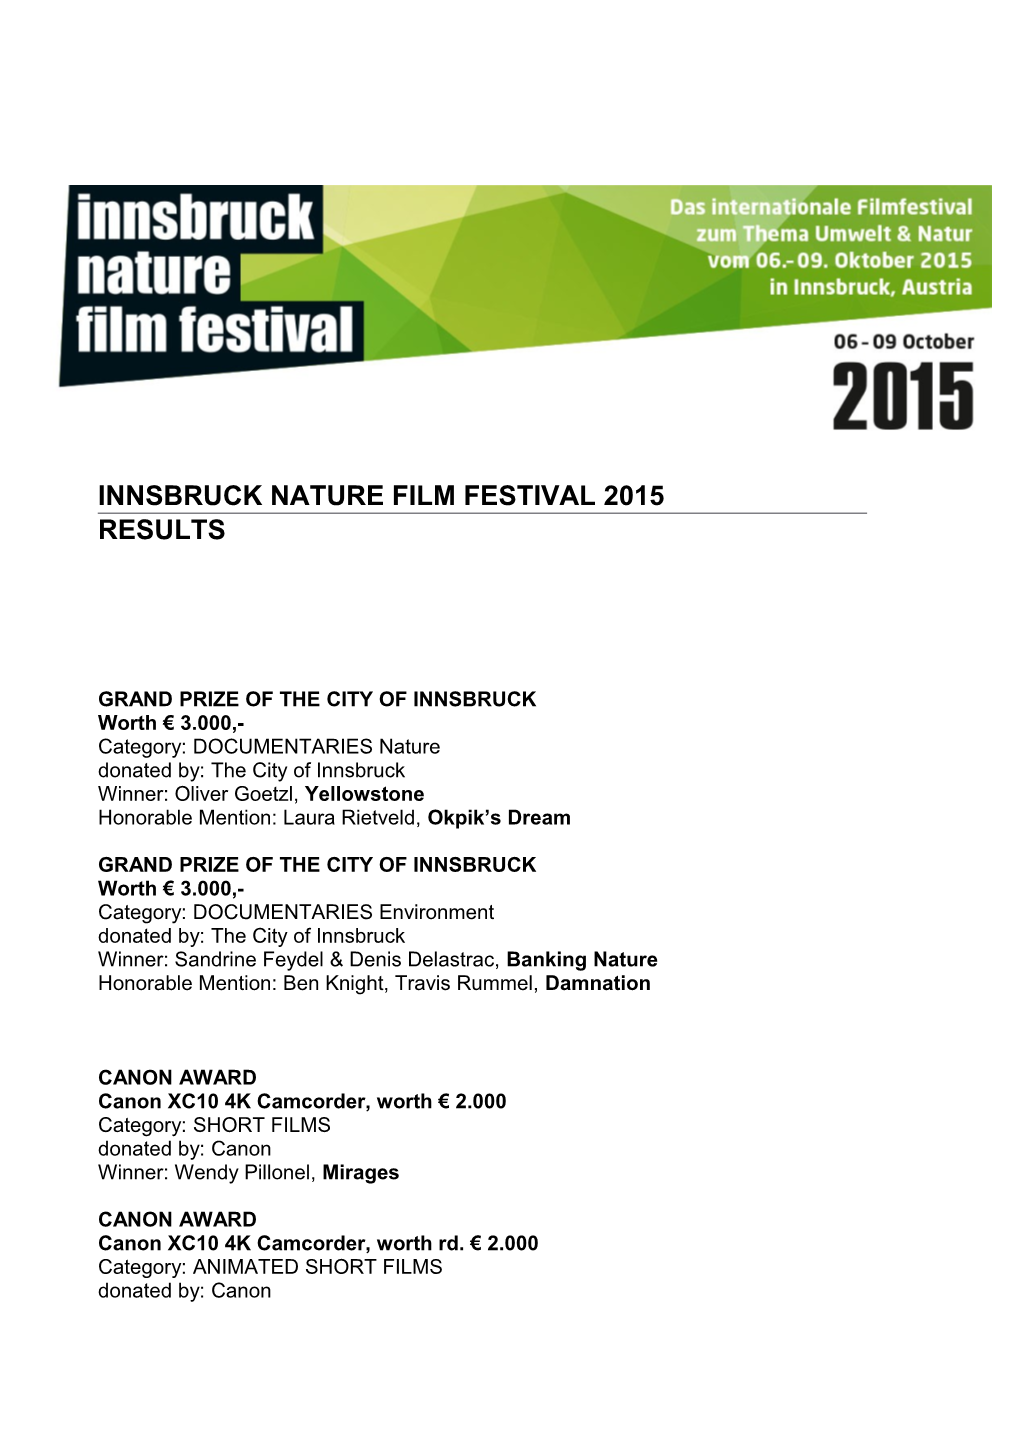 Innsbruck Nature Film Festival 2015